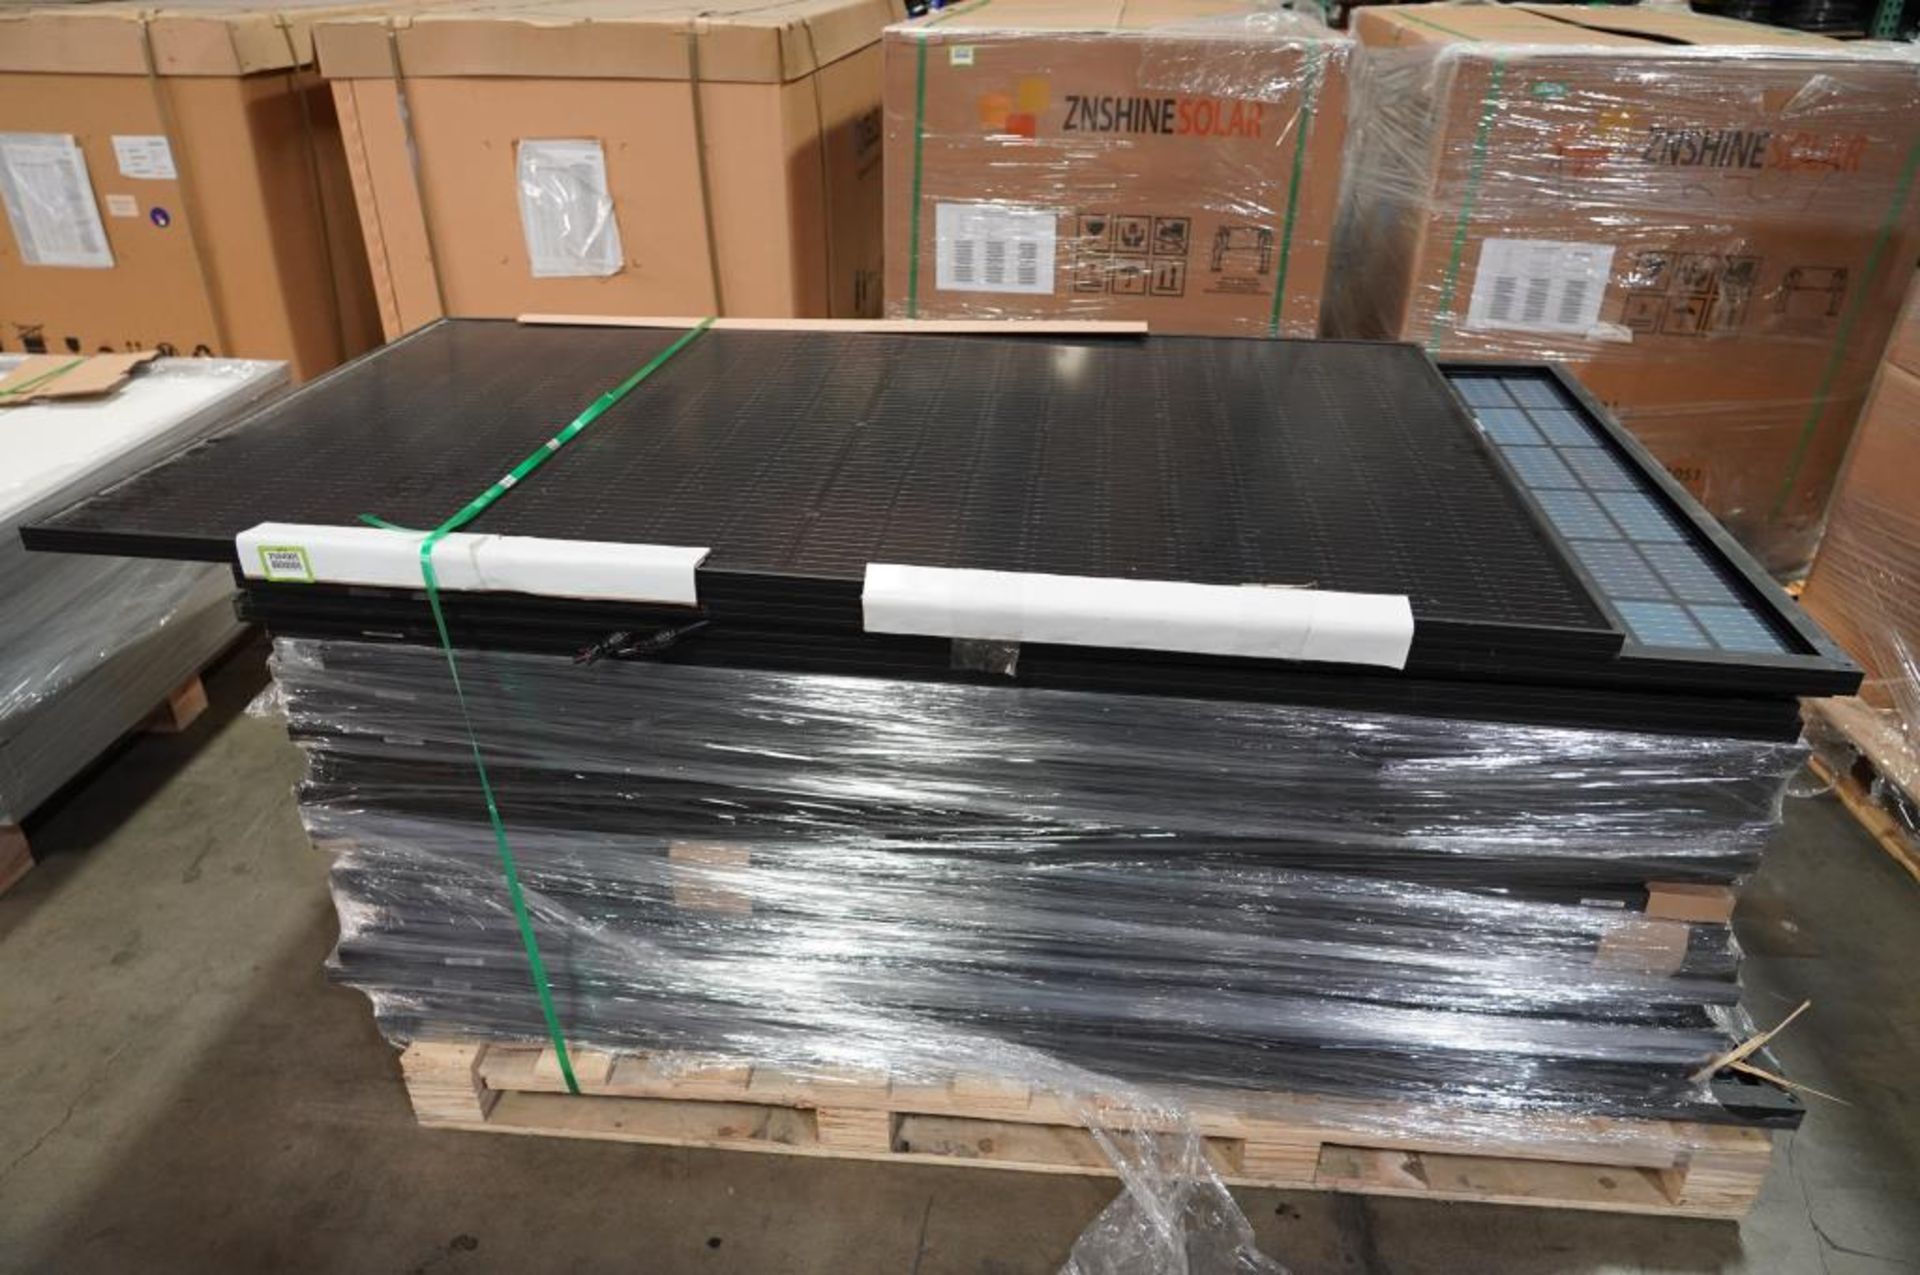 VSUN 370 Watt PV Solar Panels